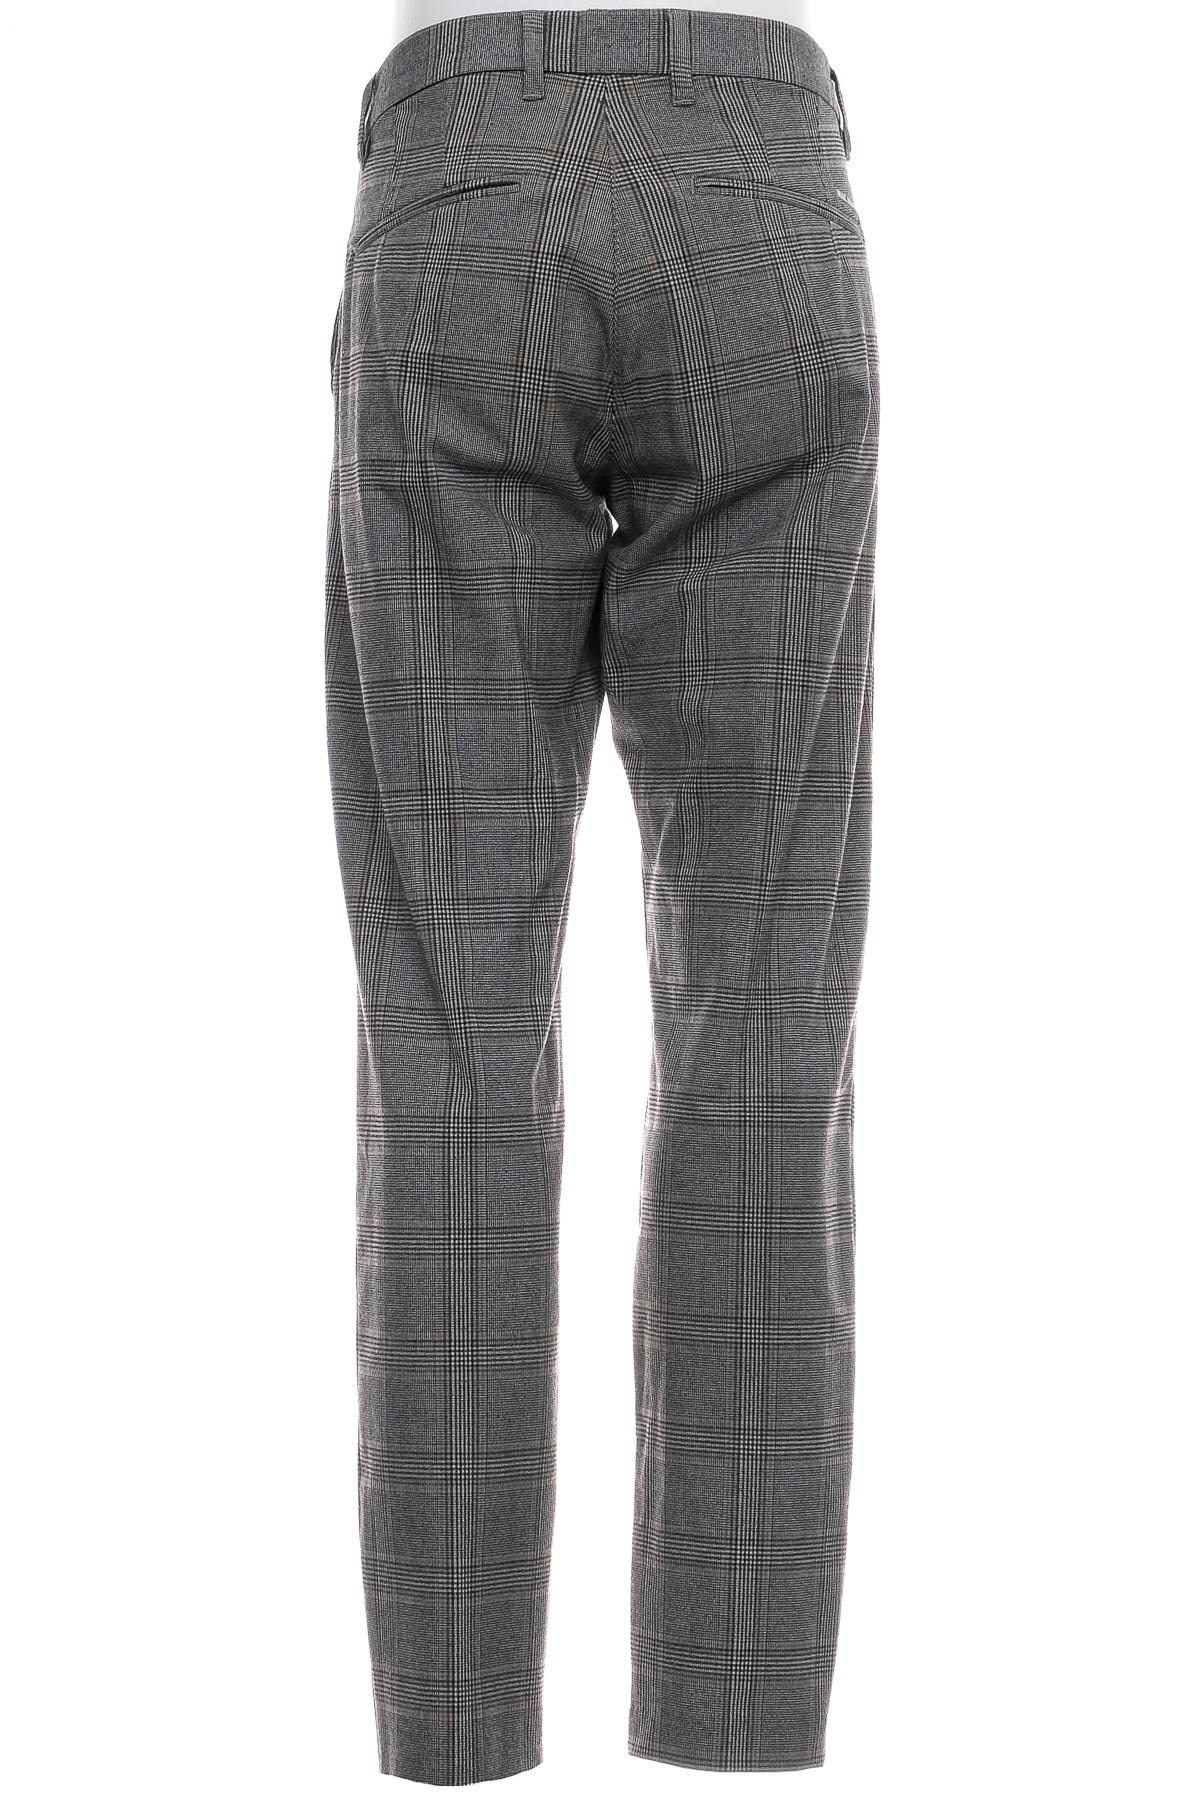 Men's trousers - MAC Jeans - 1